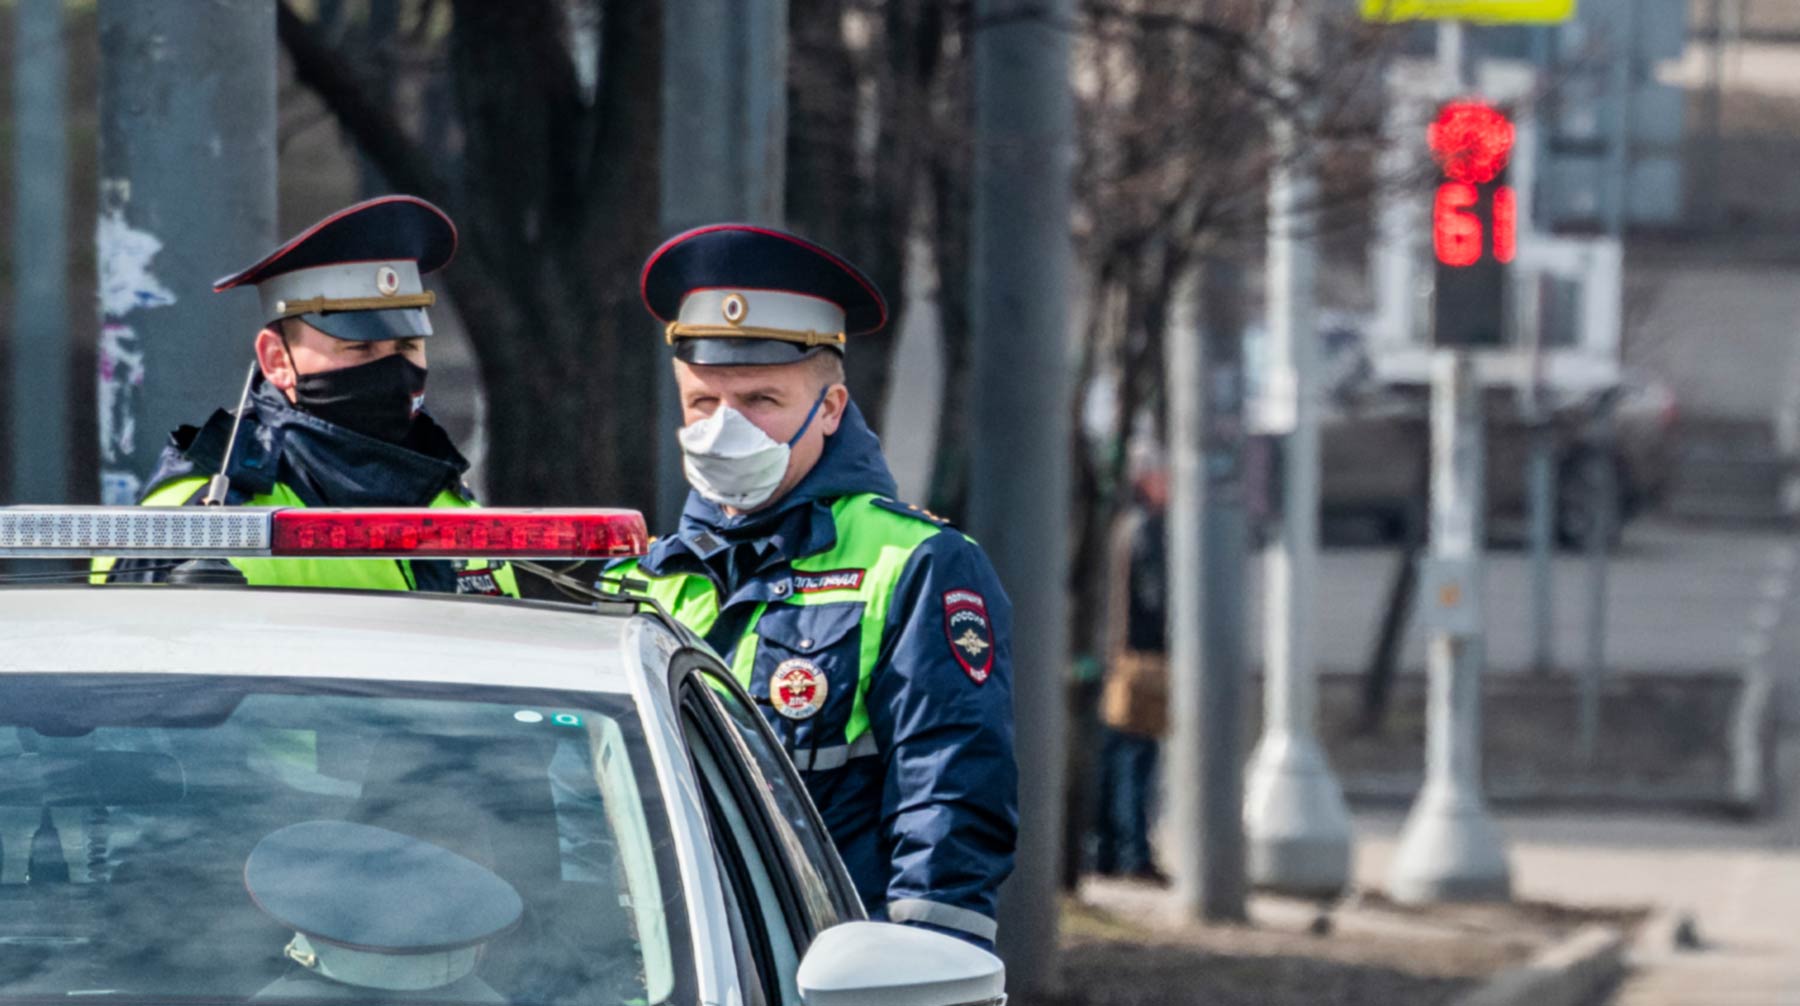 Нарушителям выпишут штраф в размере пяти тысяч рублей Фото:  © Global Look Press / Konstantin Kokoshkin